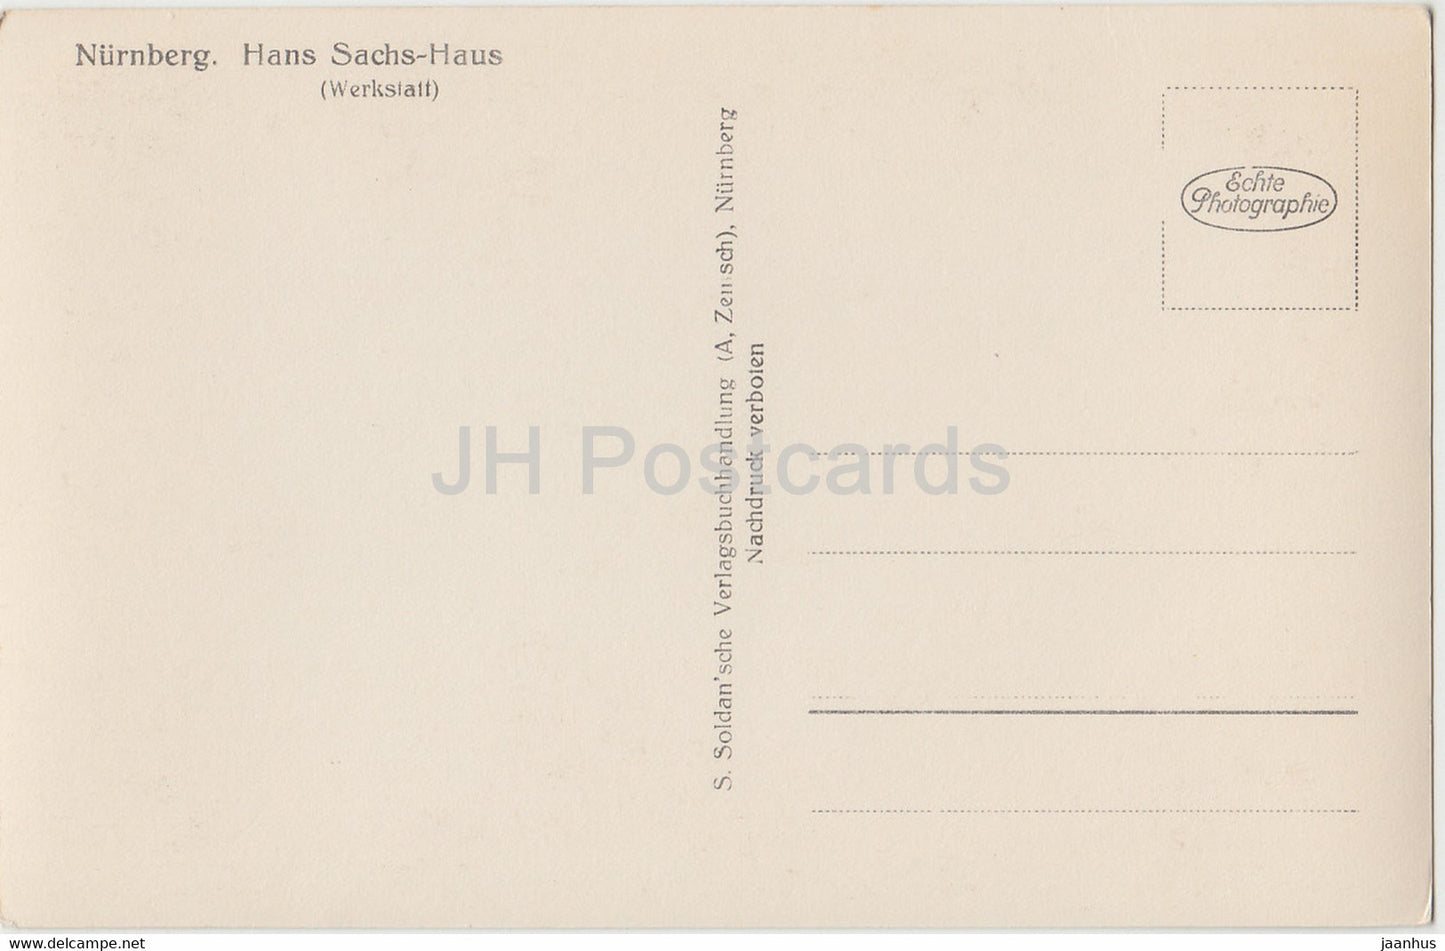 Nurnberg - Hans Sachshaus - Werkstatt - old postcard - Germany - unused